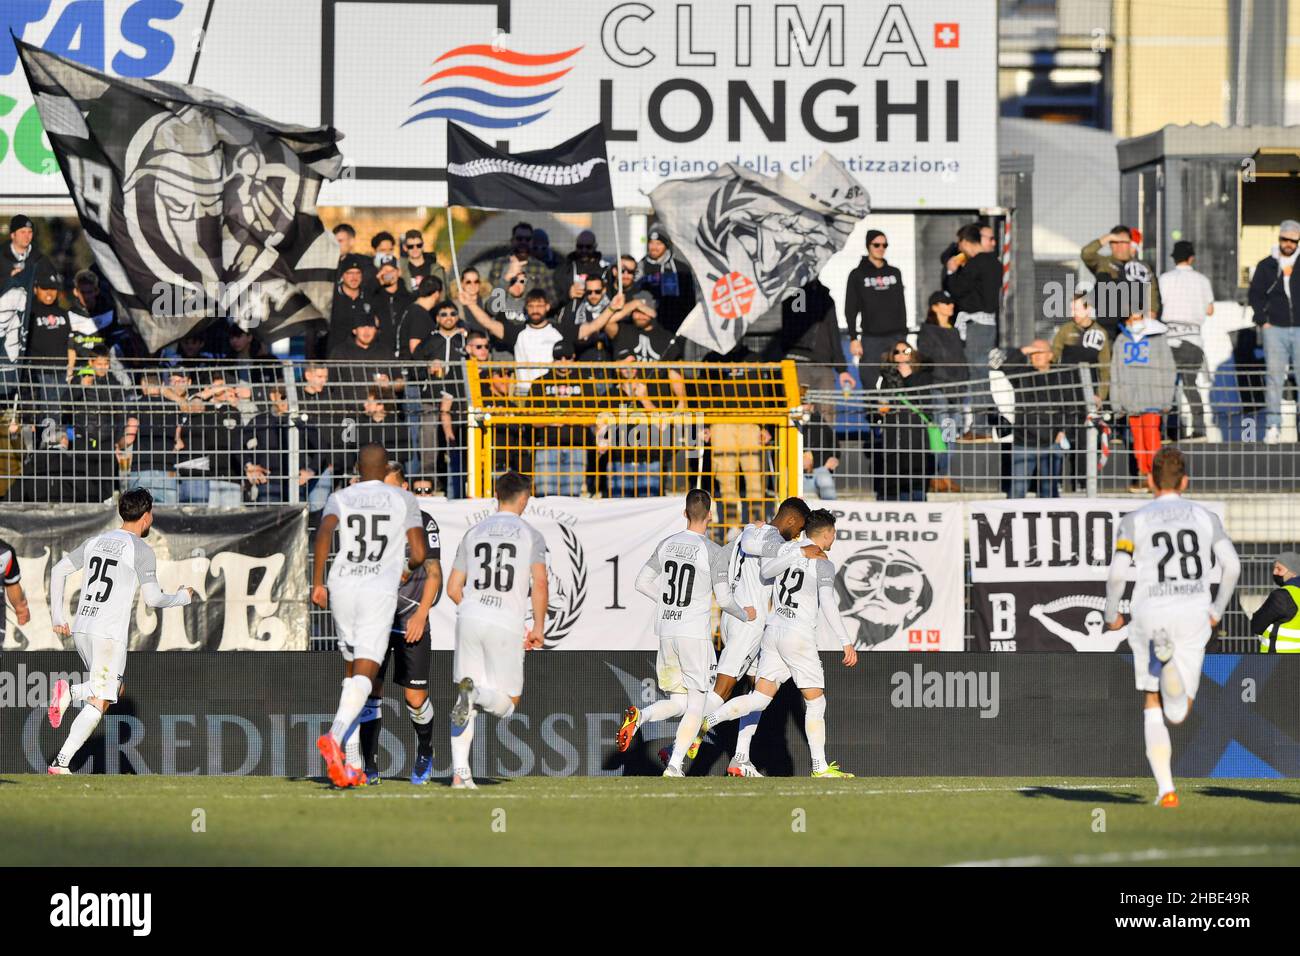 Lugano II gioca per la promozione - FC Lugano